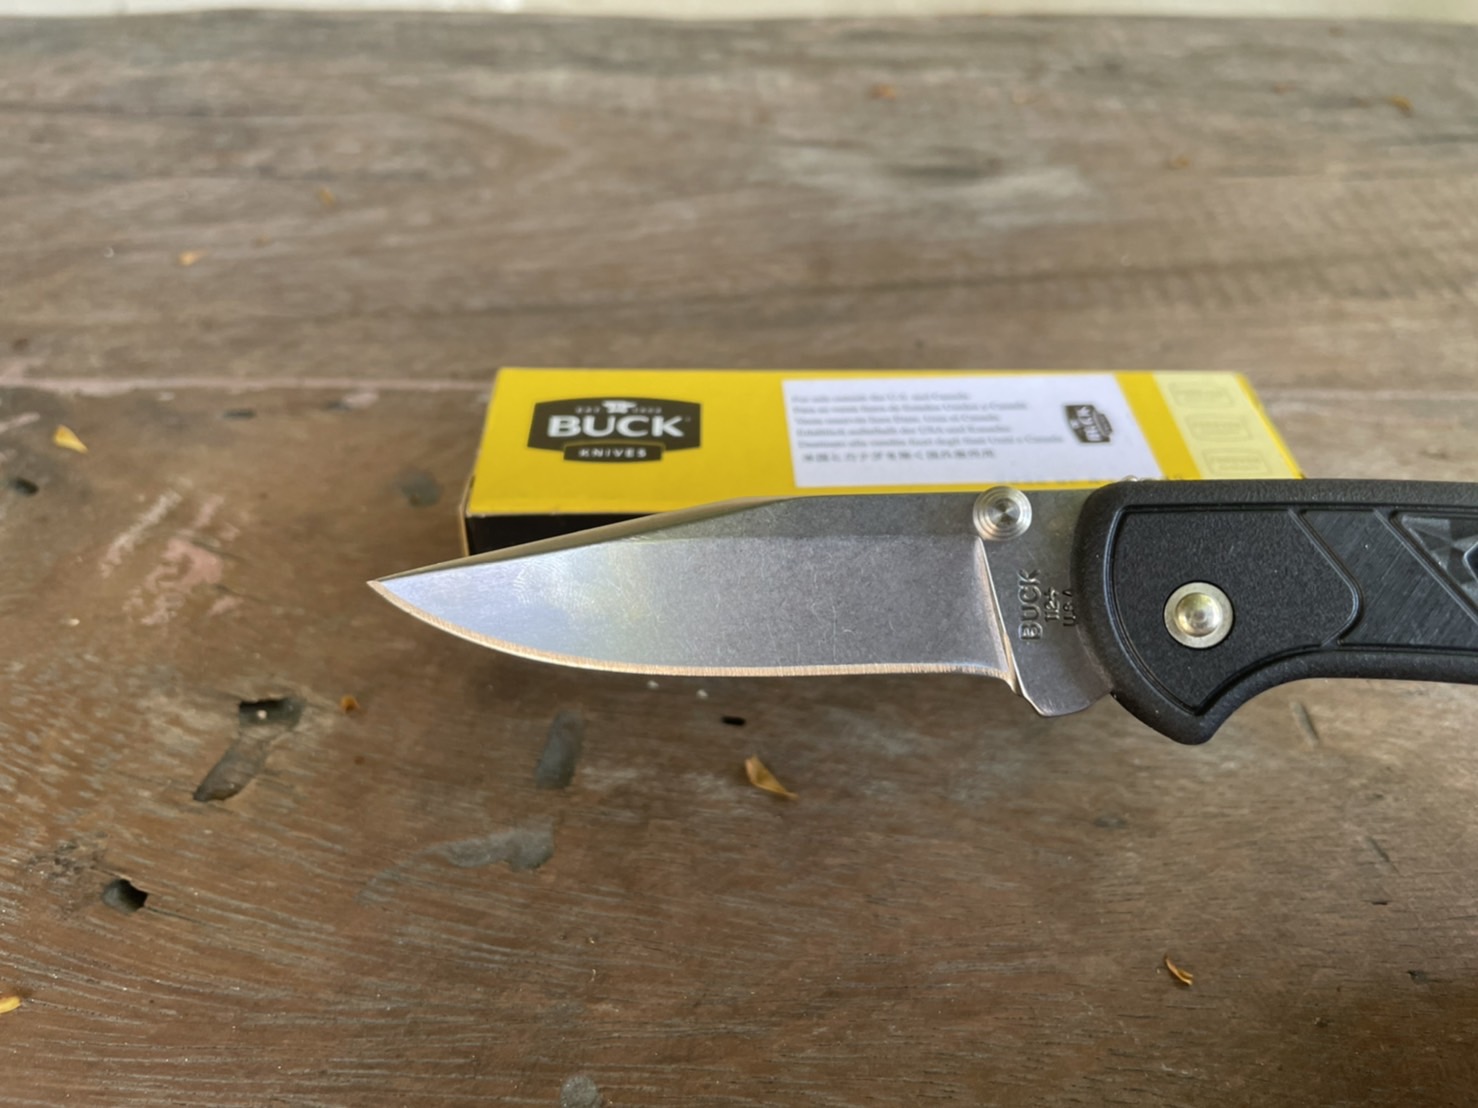 Buck 112 Slim Ranger Select Folding Knife {0112BKS1-11881} #มีดพับด้ามสีดำ